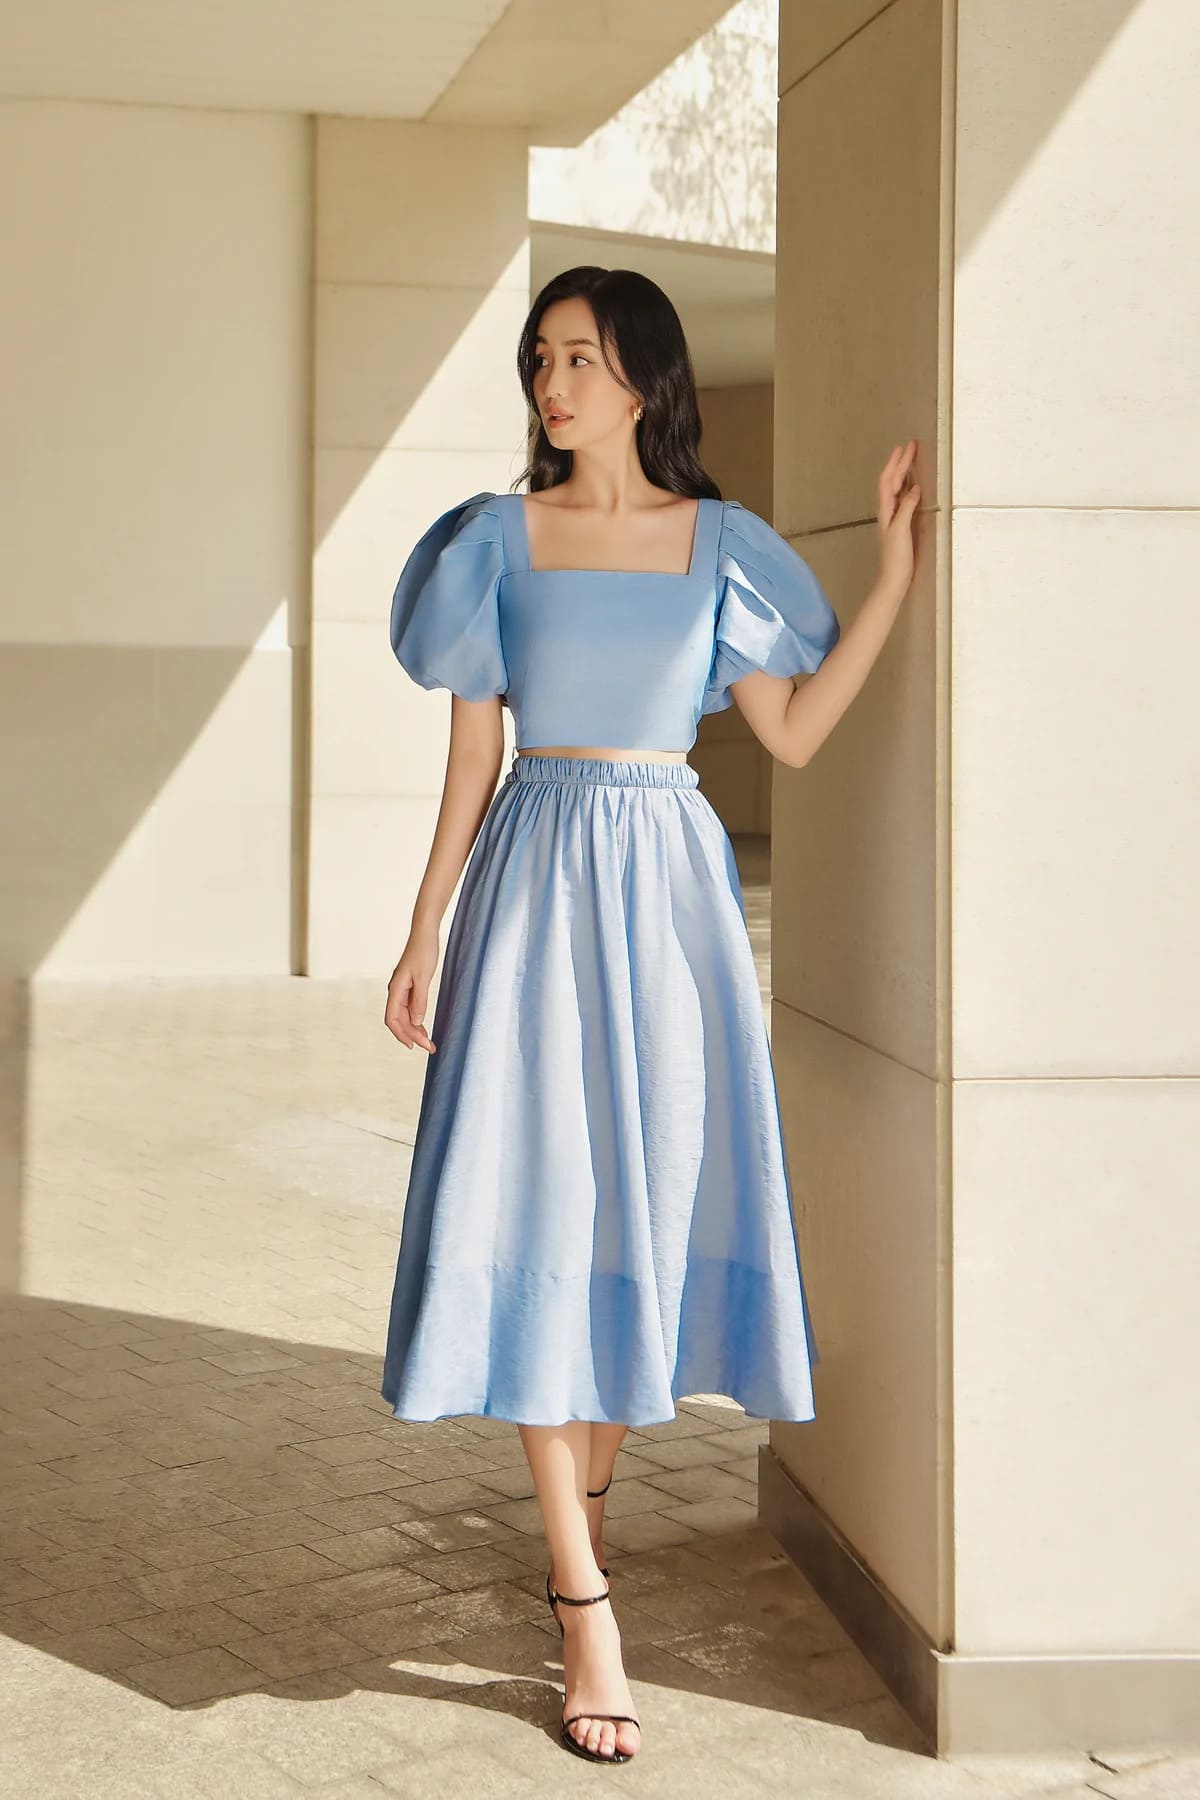 Chi tiết với hơn 75 váy màu xanh da trời nhạt tuyệt vời nhất  trieuson5